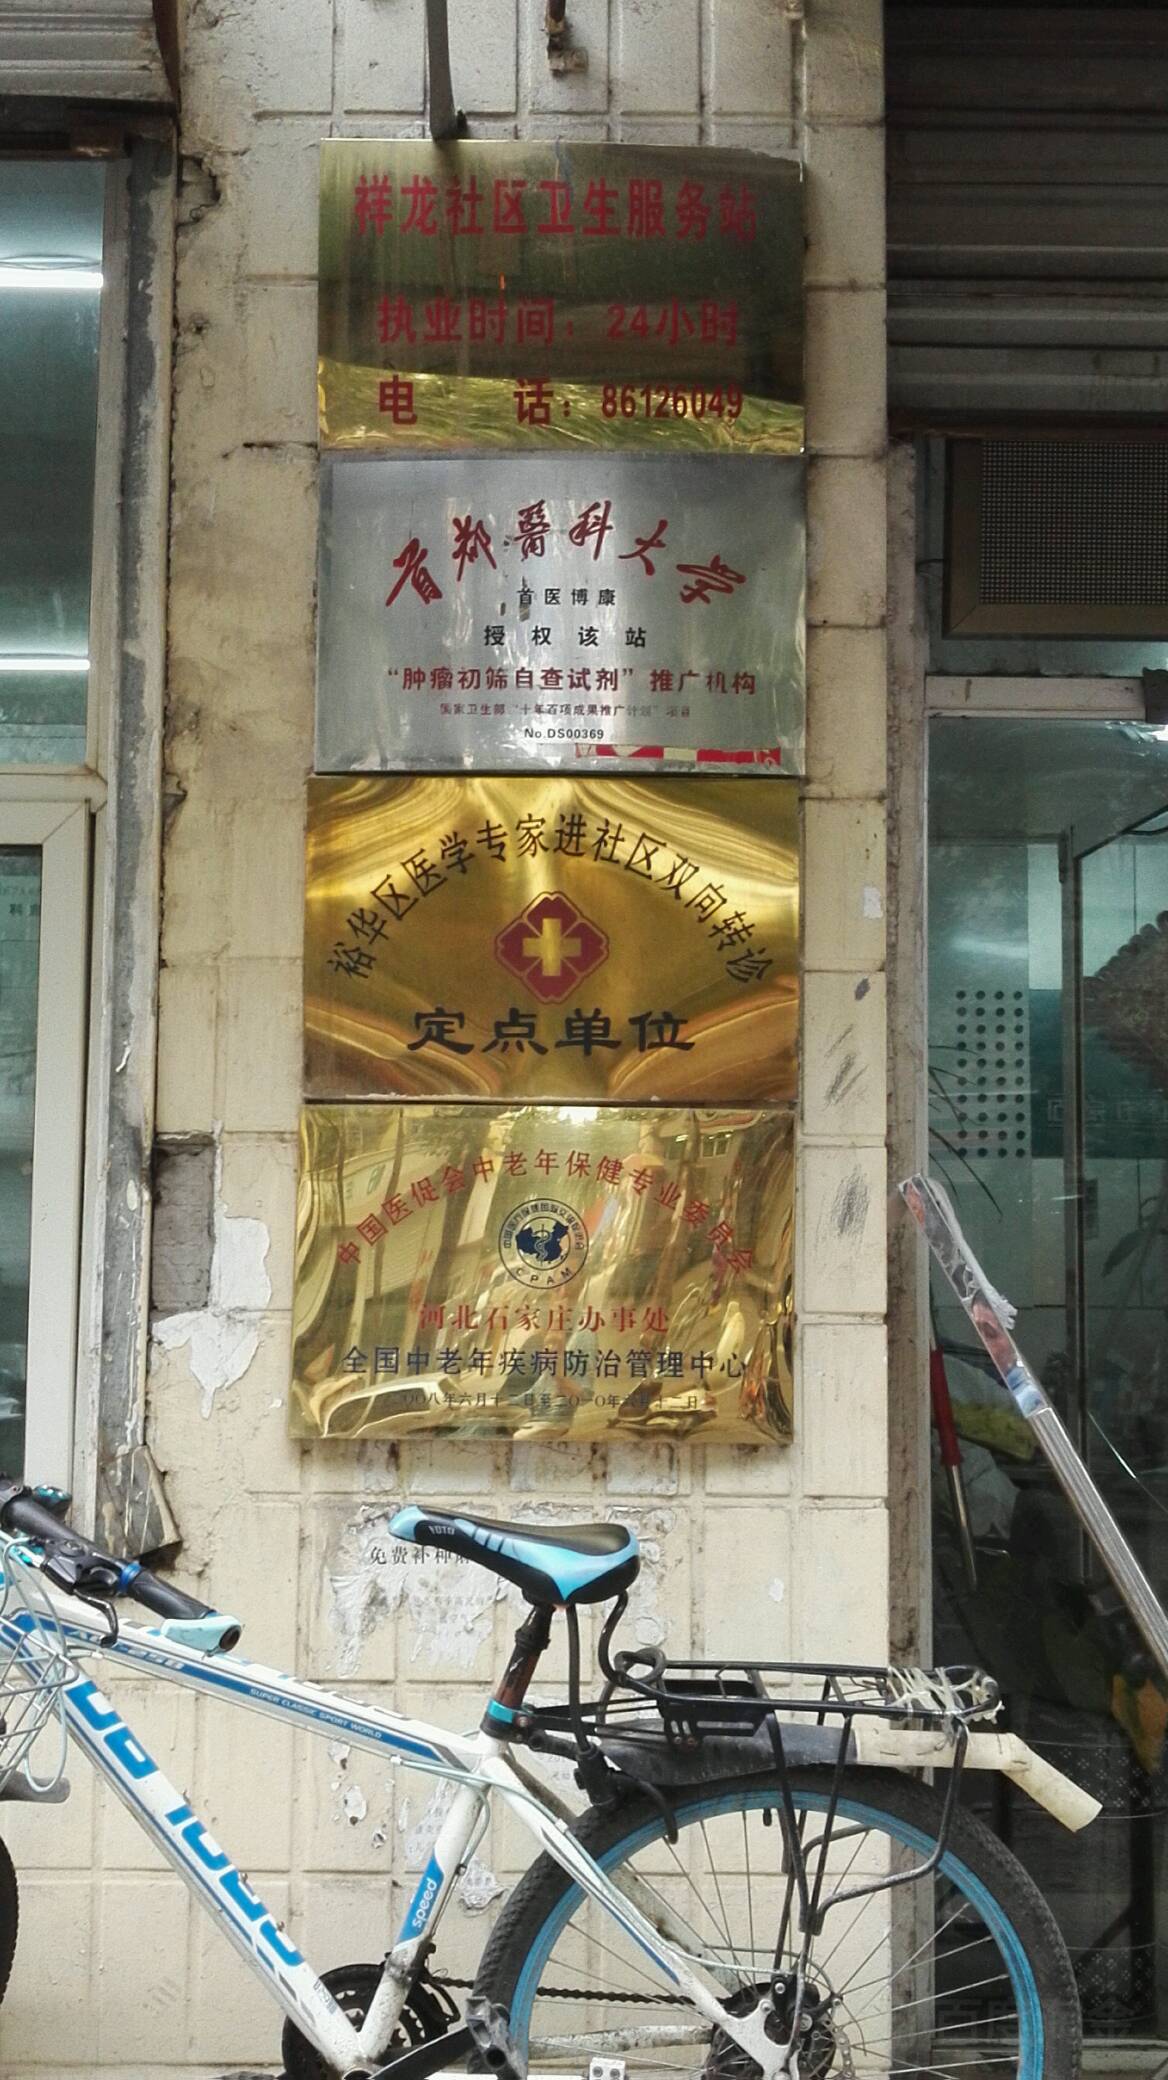 中國醫促會中老年保健專業委員會河北石家莊辦事處